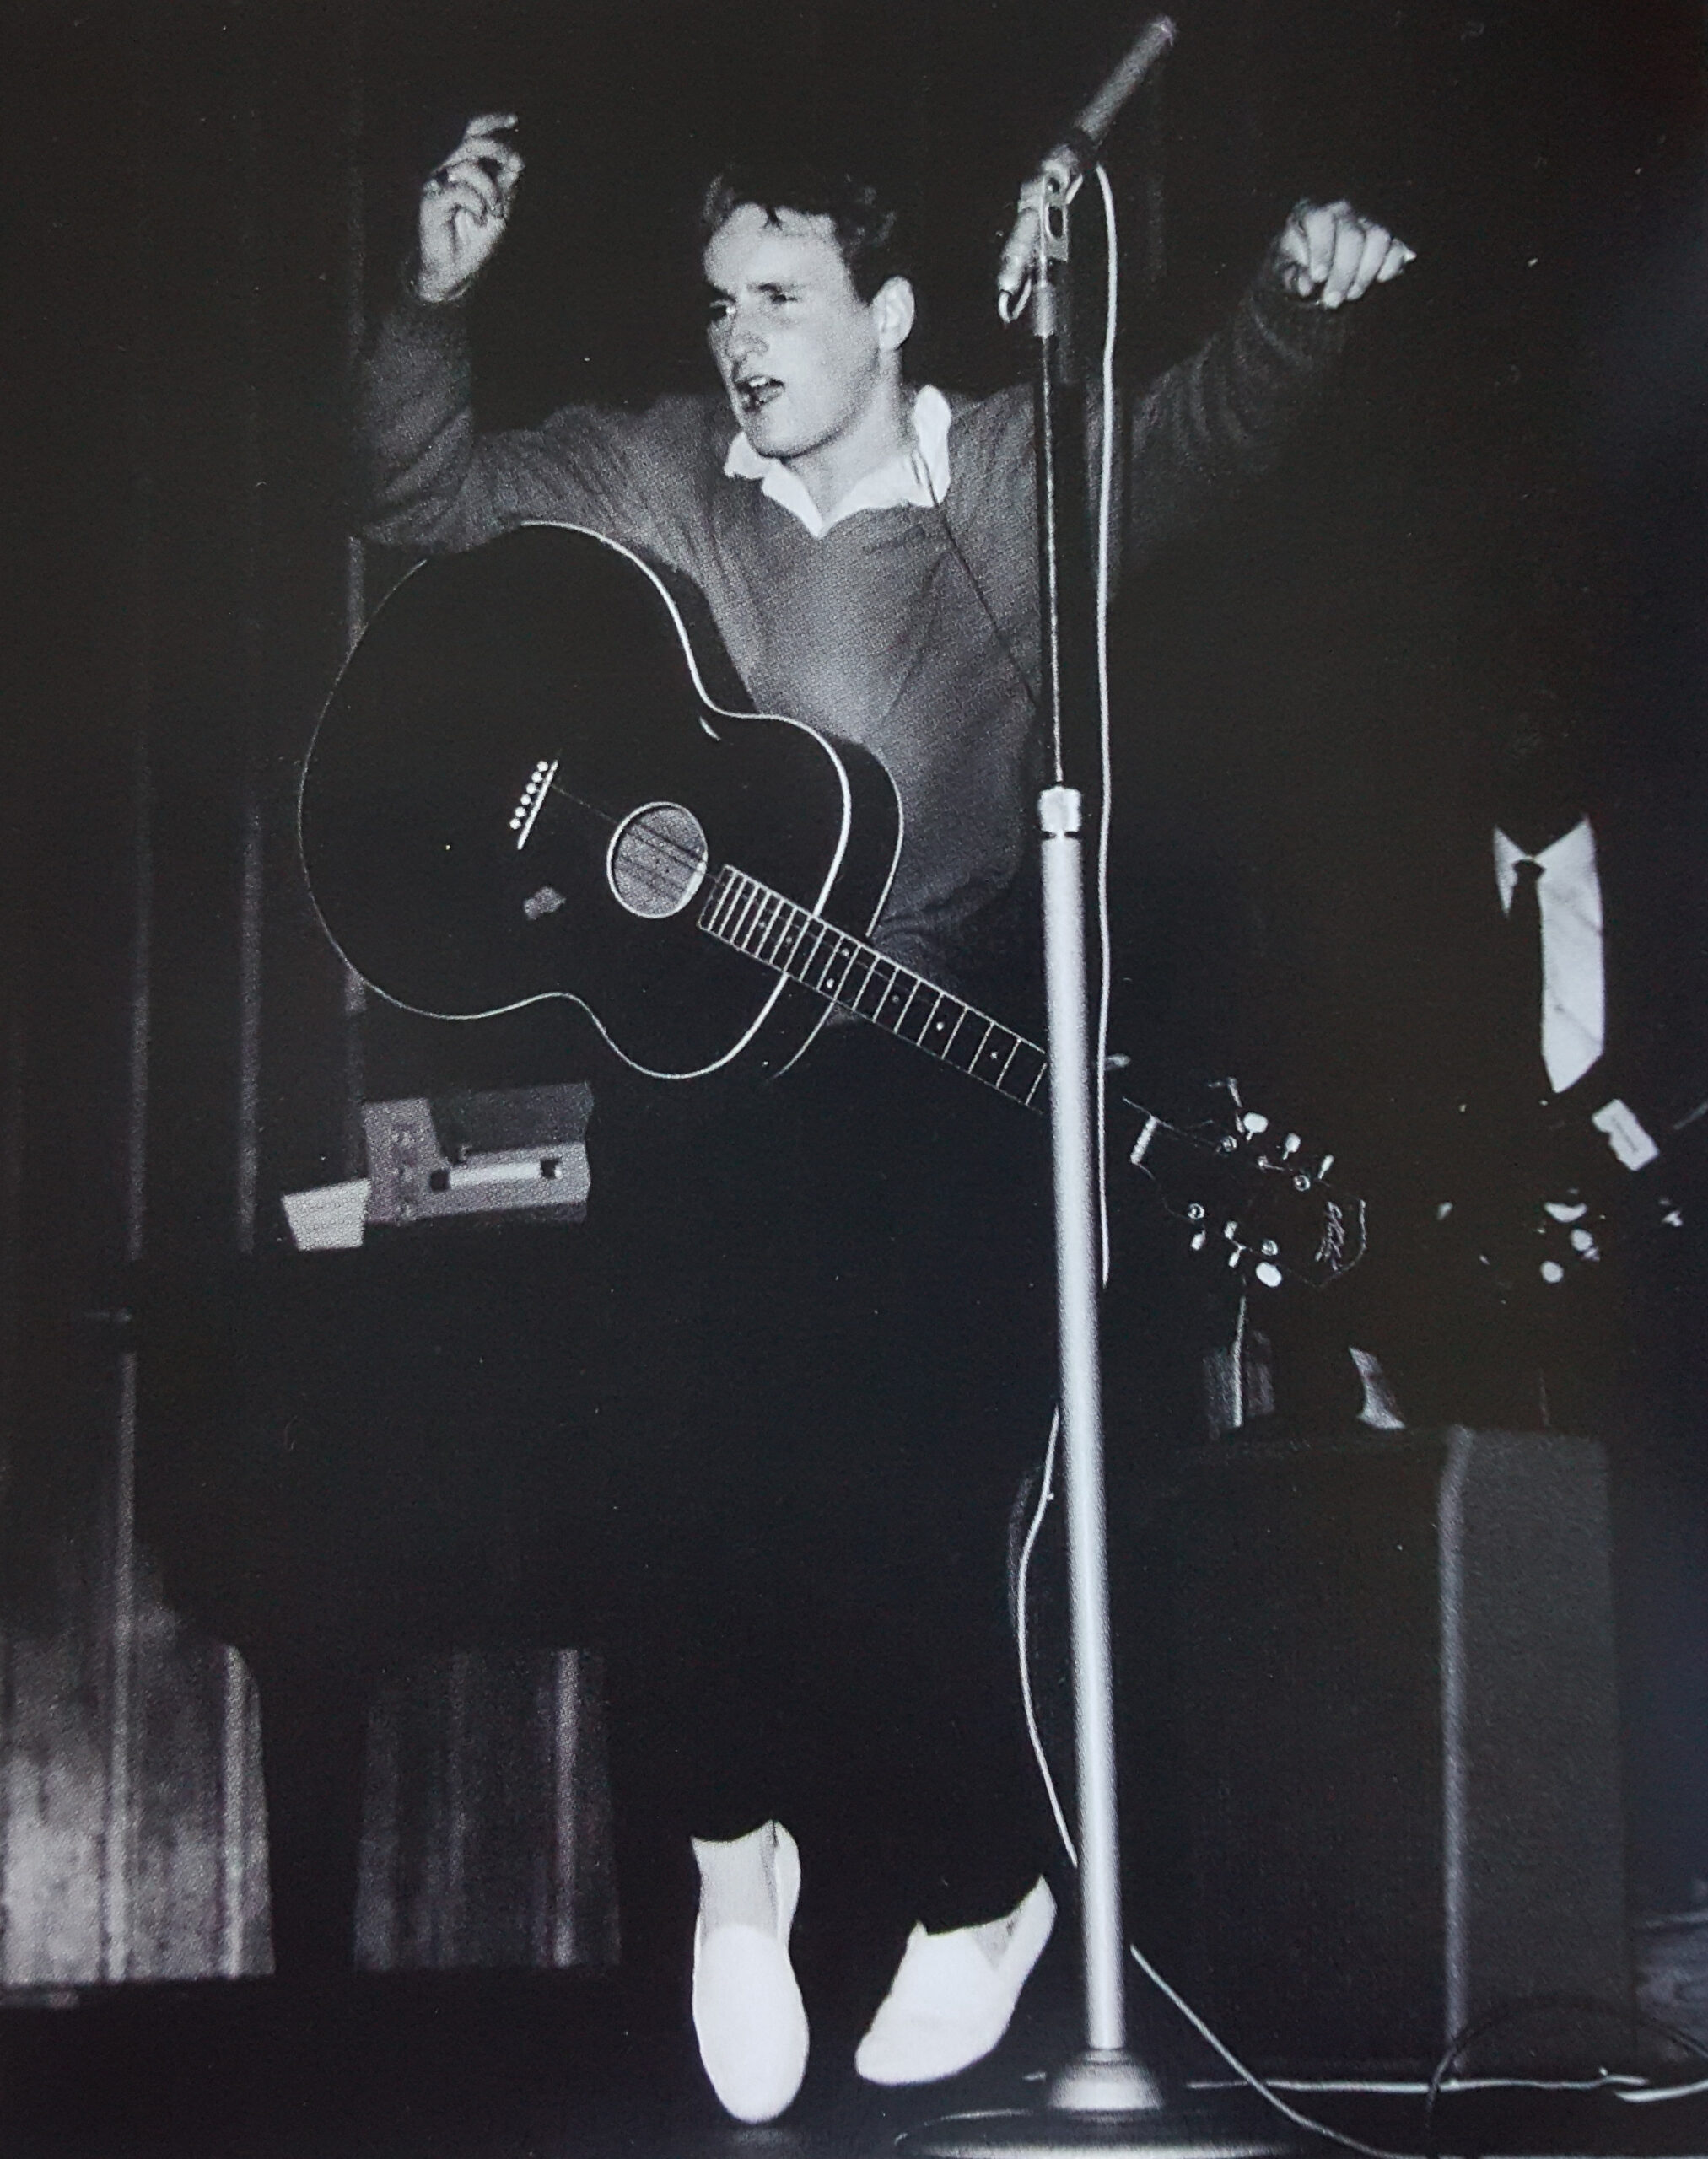 Lonnie Lee on stage Brisbane 1959